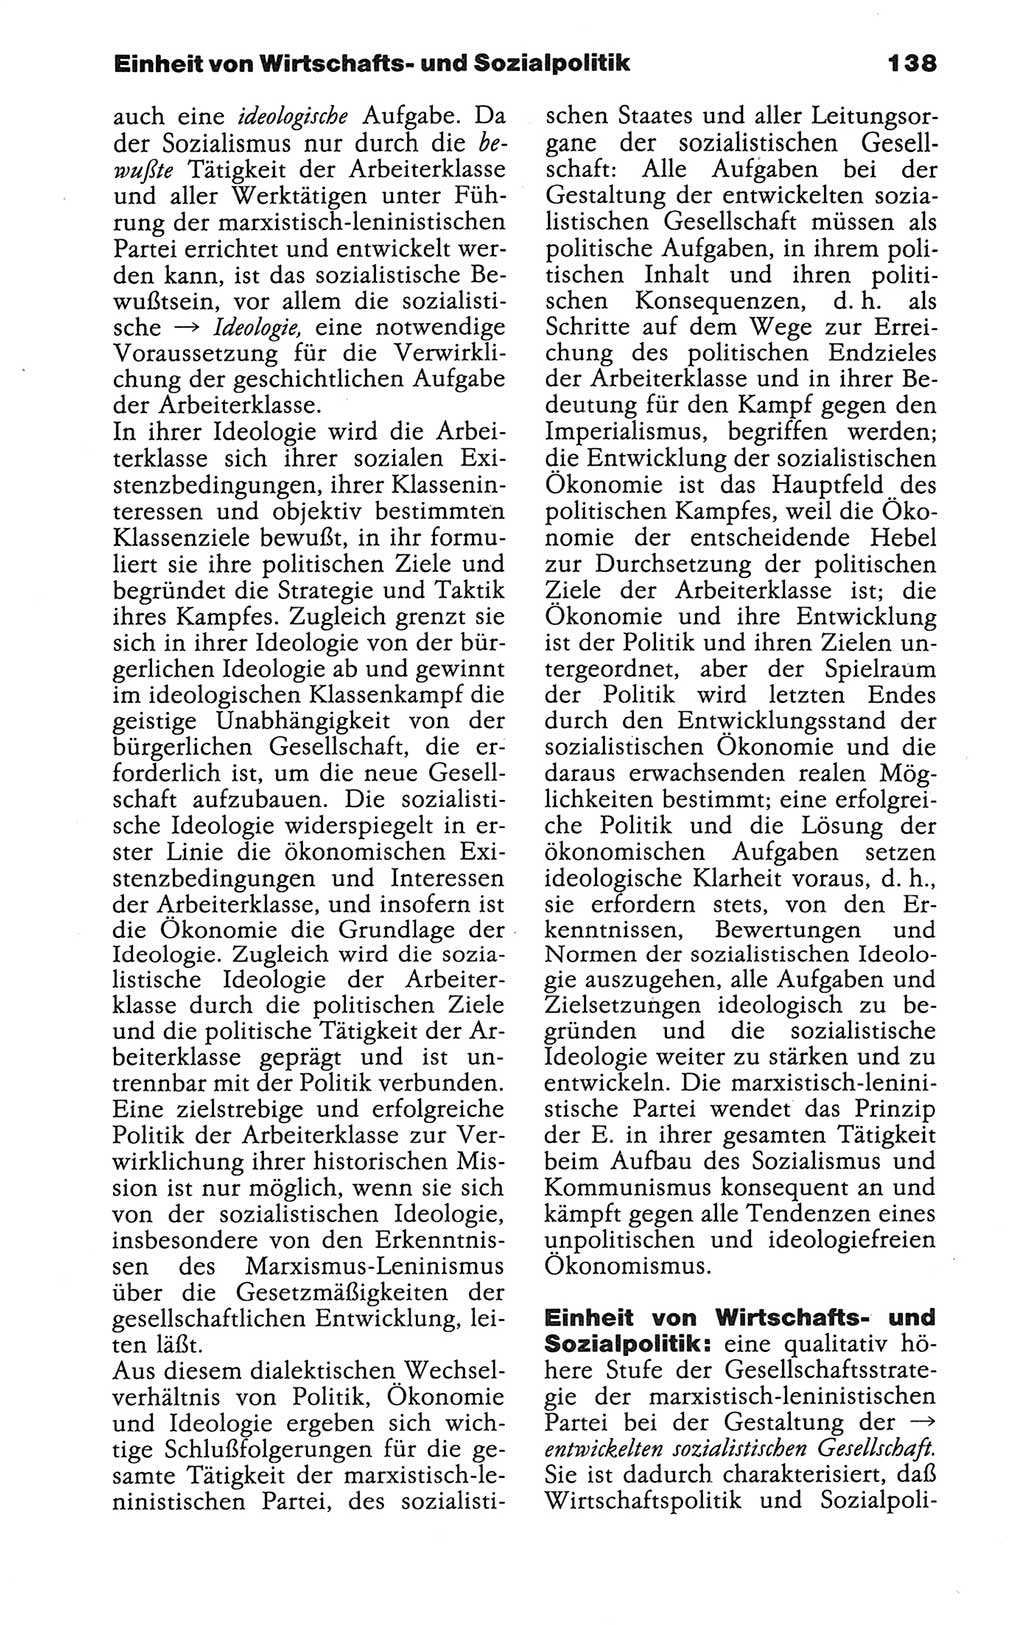 Wörterbuch der marxistisch-leninistischen Philosophie [Deutsche Demokratische Republik (DDR)] 1986, Seite 138 (Wb. ML Phil. DDR 1986, S. 138)